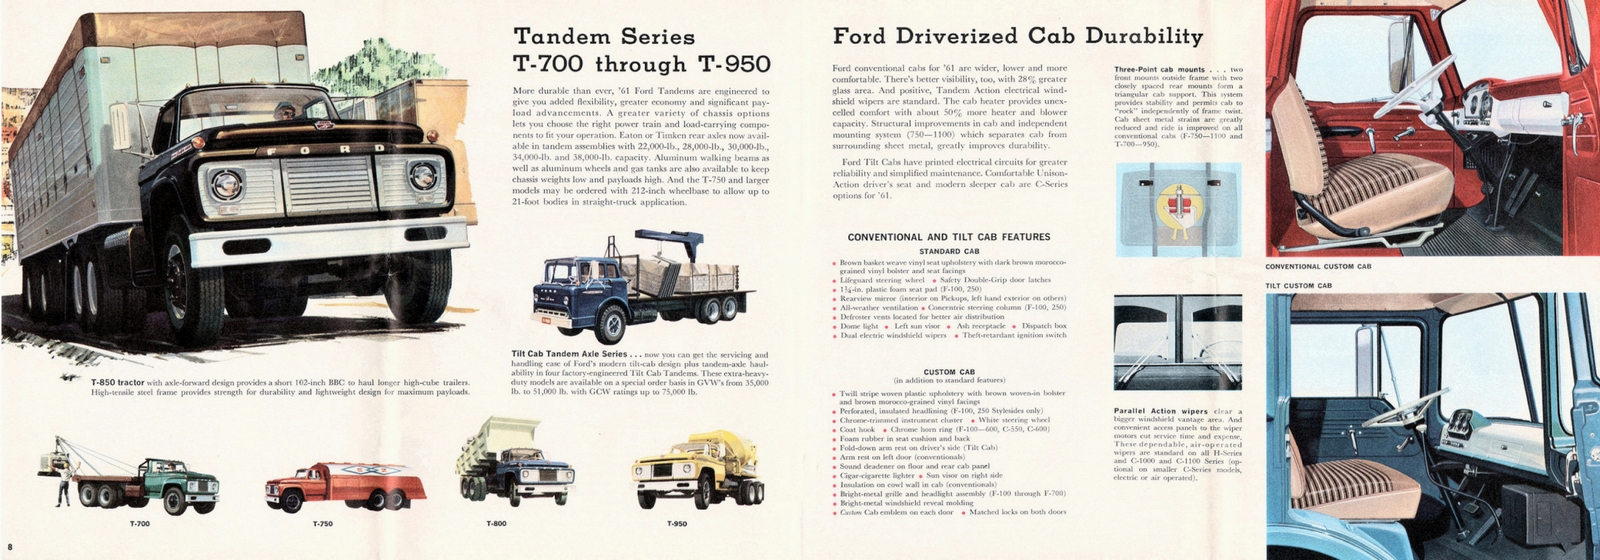 n_1961 Ford Truck Full Line-08-09.jpg